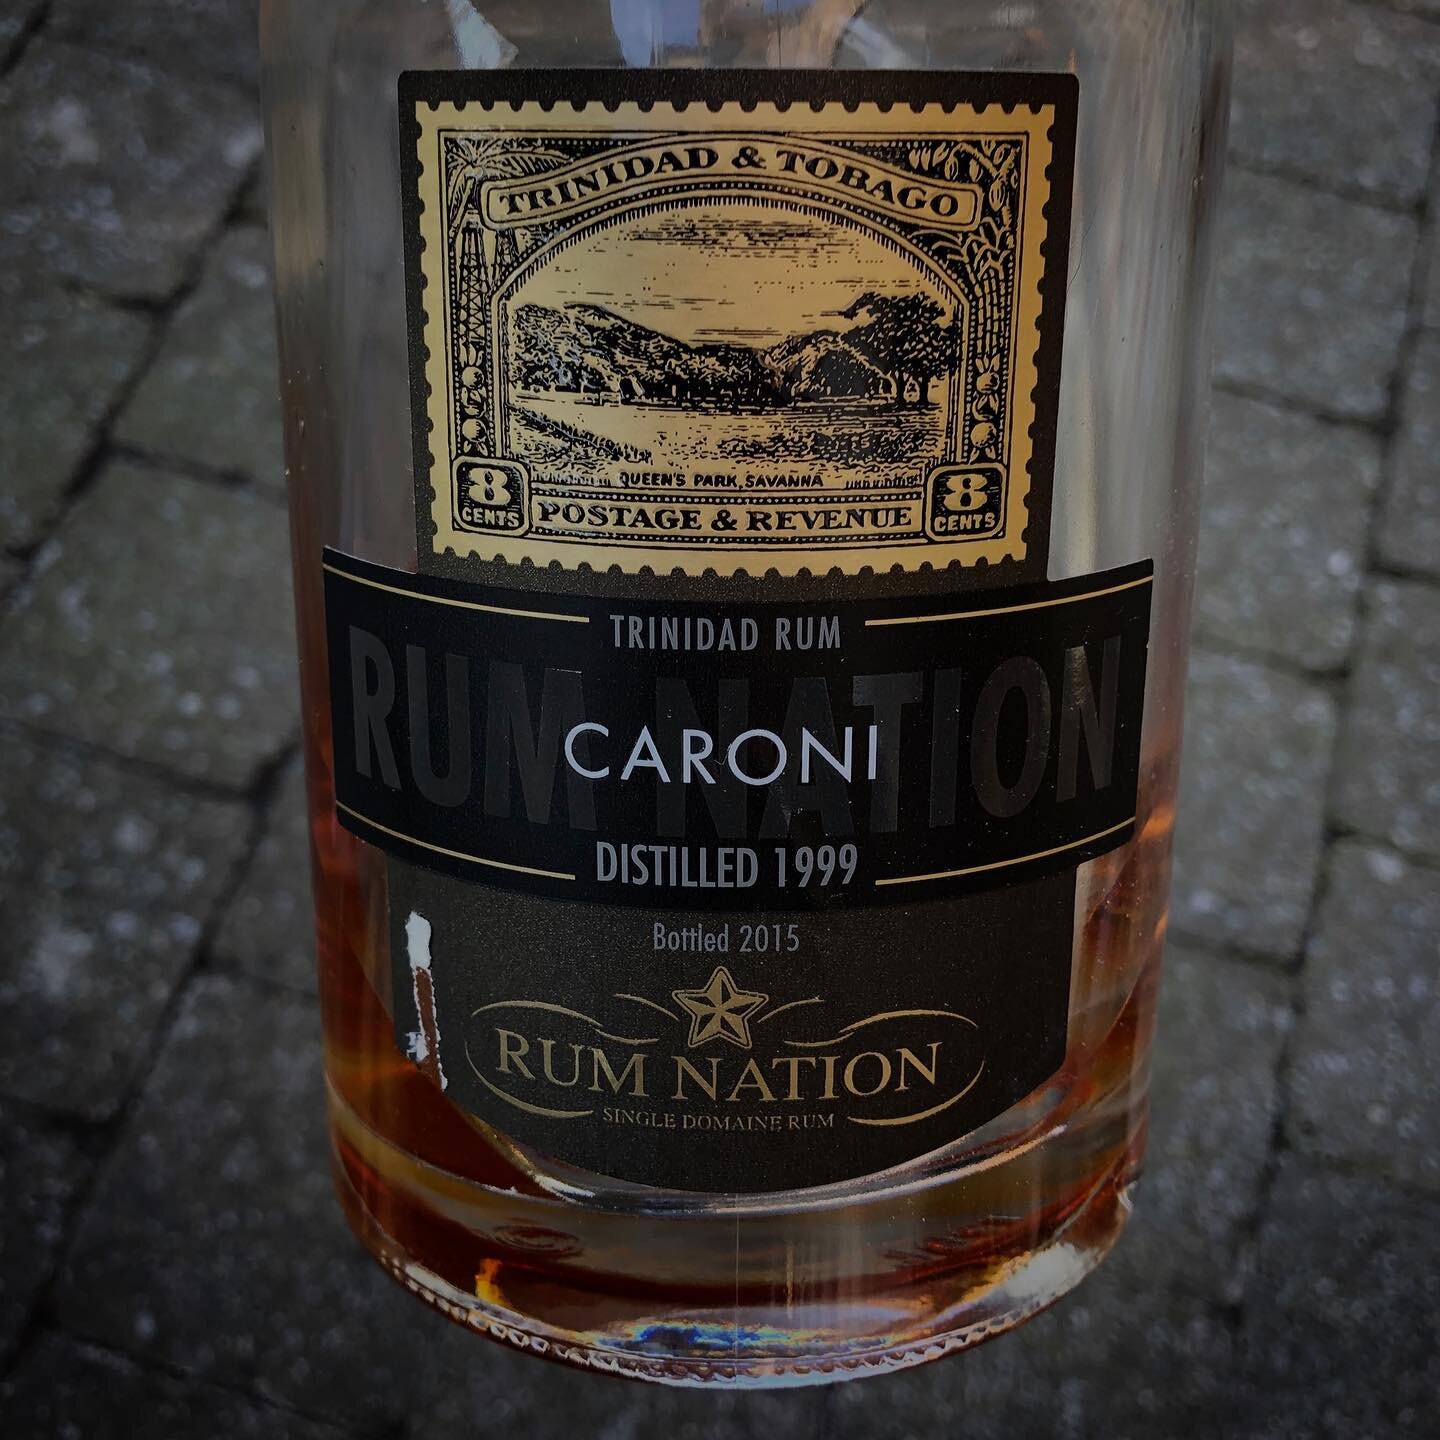 Good one!
.
.
#caroni #caronirum #trinidadrum #oldrum #rumcollector #rum